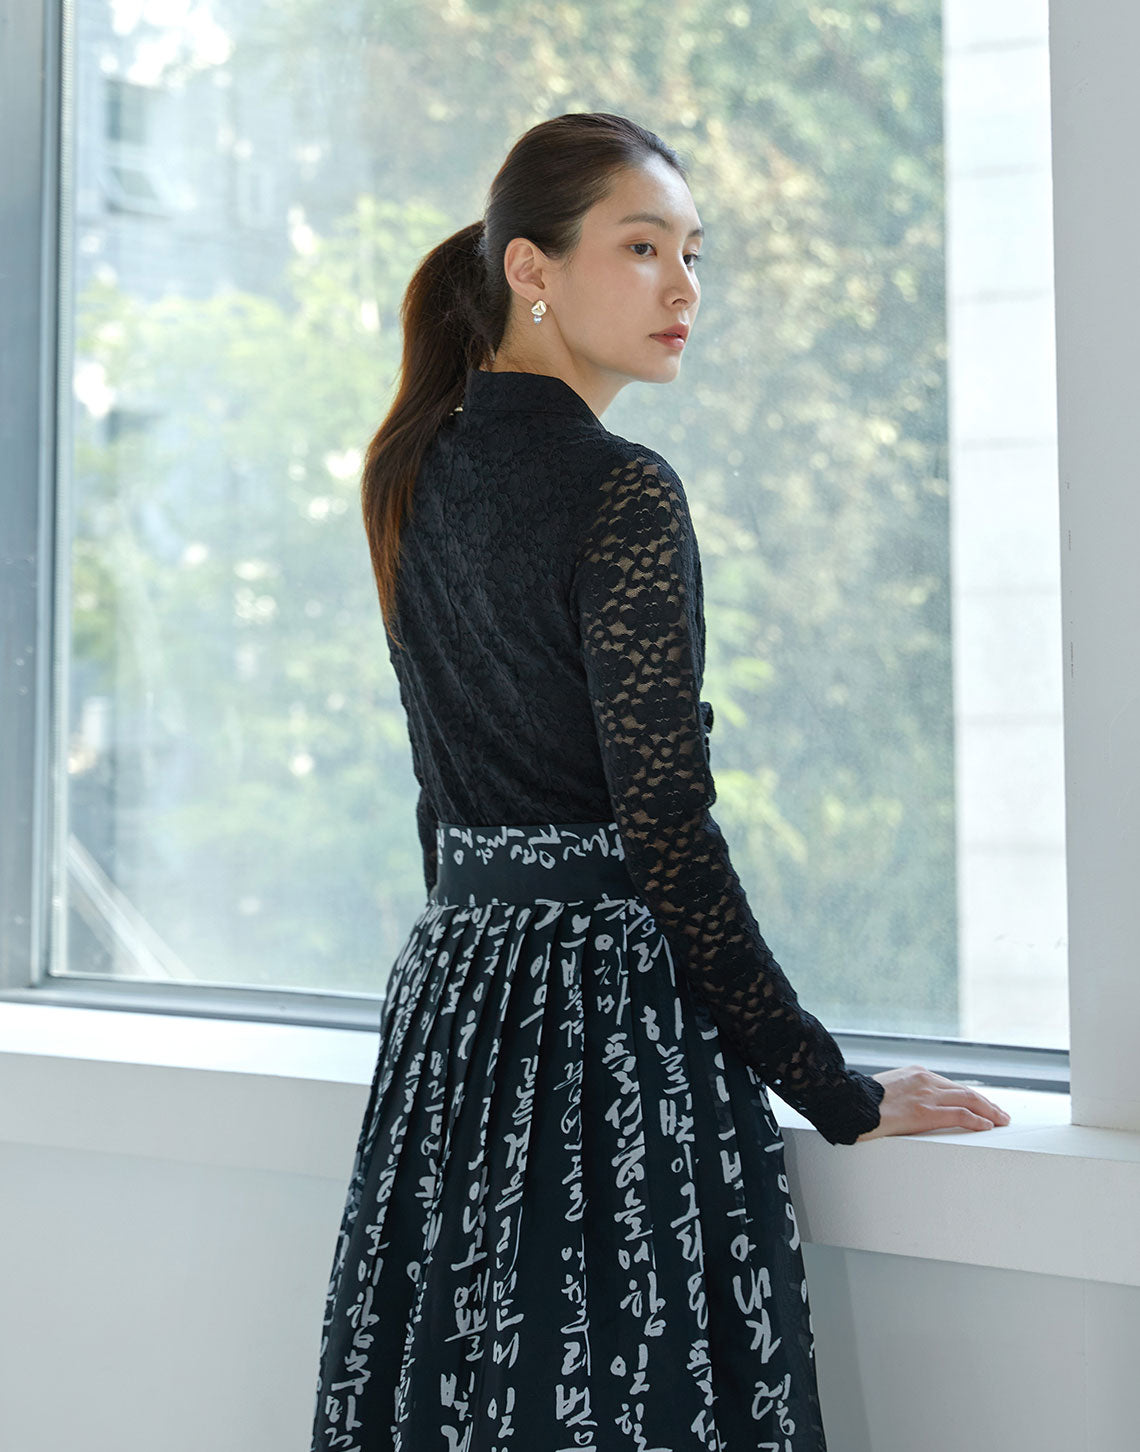 Skirt - Traditional Hangeul